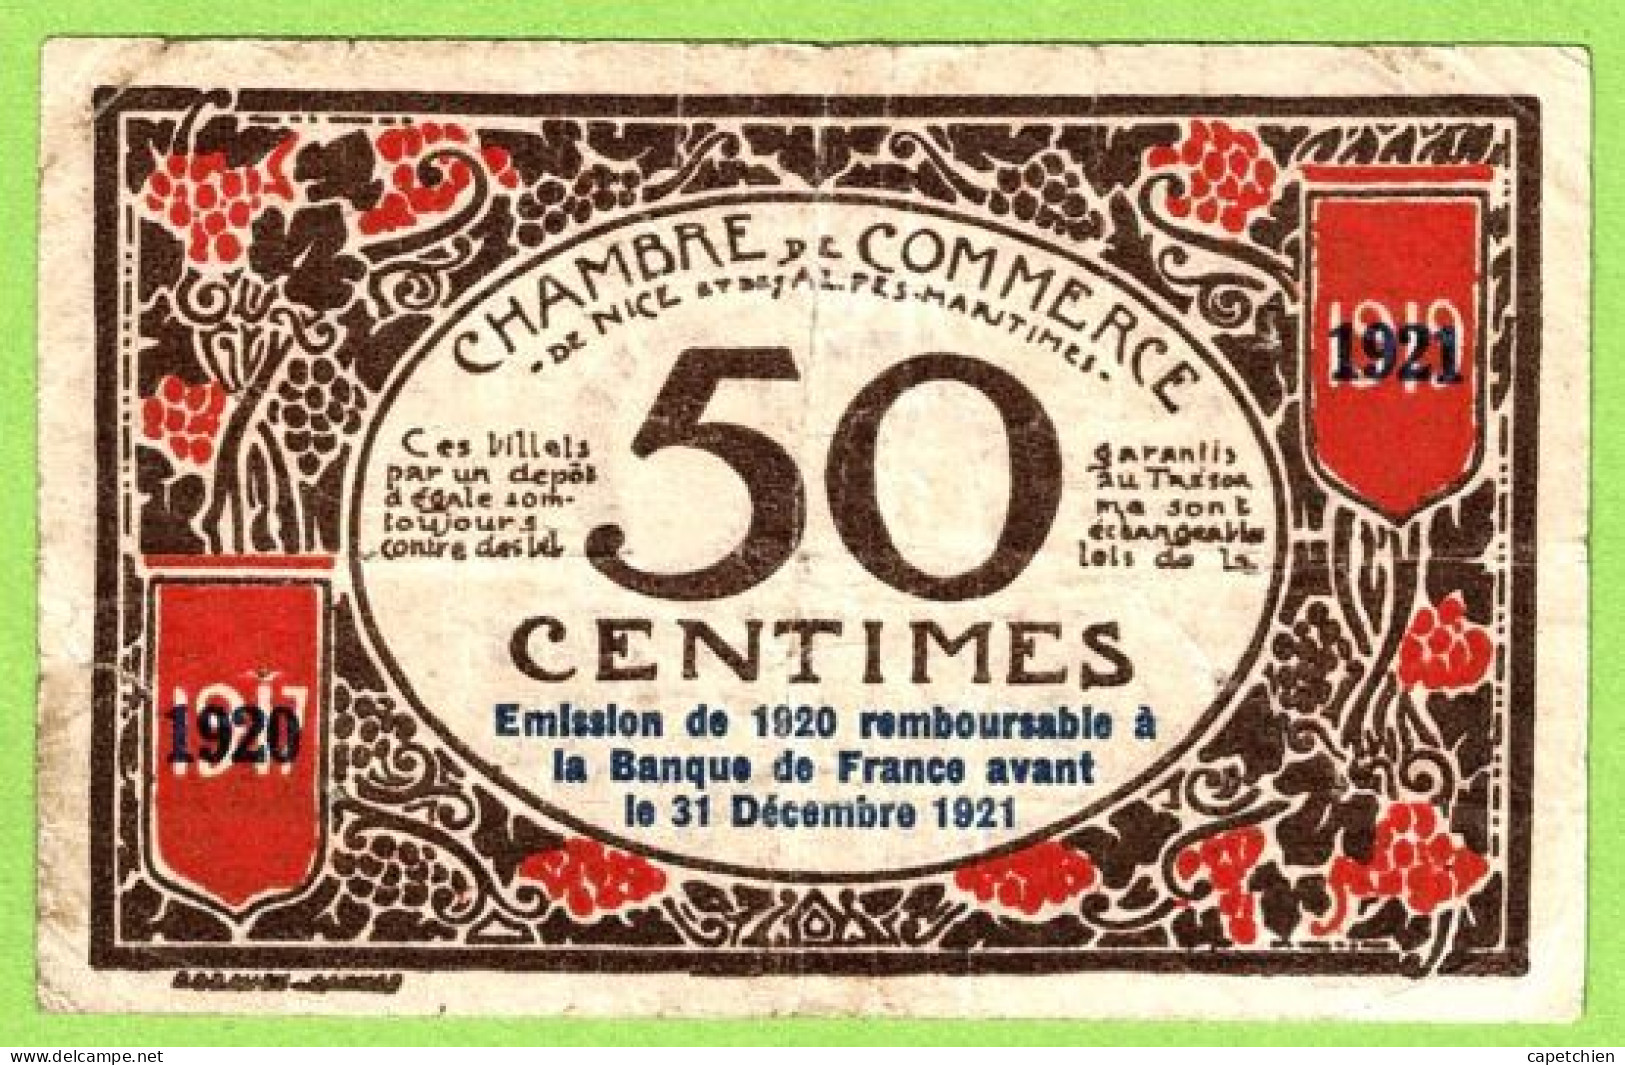 FRANCE / CHAMBRE De COMMERCE / NICE - ALPES MARITIMES / 50 CENTIMES / 1917 - 1921 SURCHARGE 1920 - 1921 / N° 17466 - Cámara De Comercio